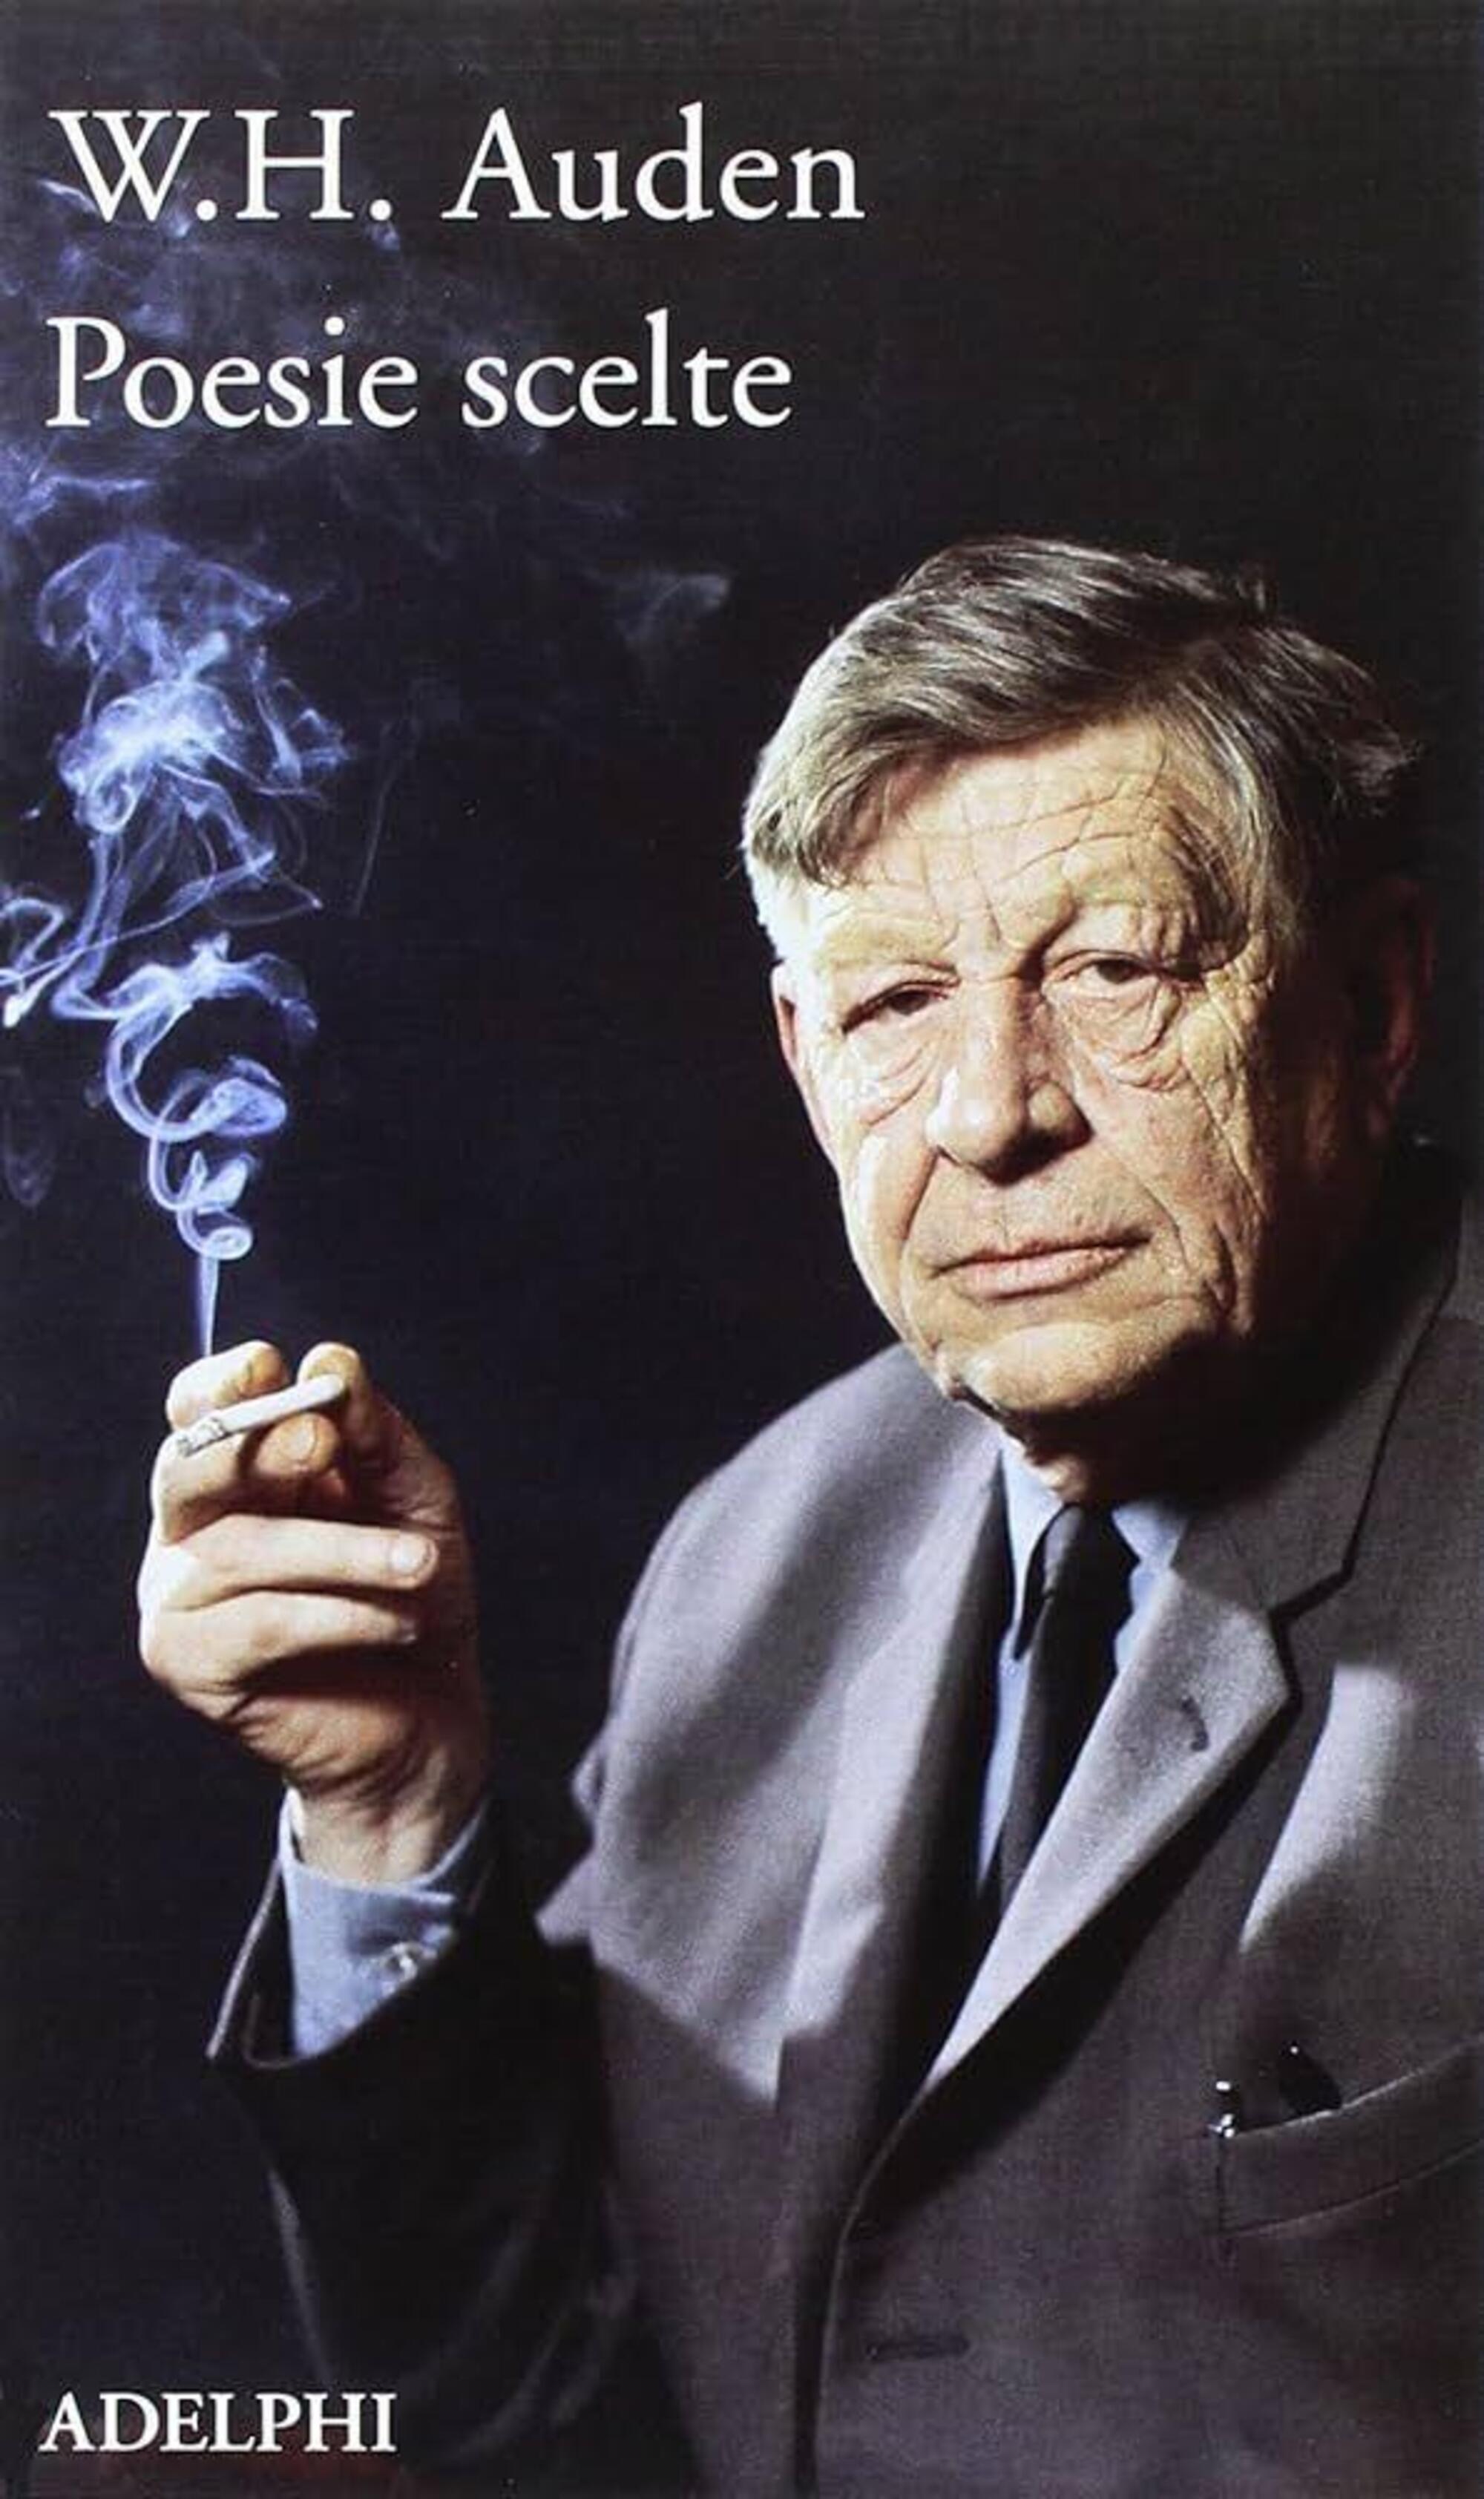 W. H. Auden, Poesie scelte (Adelphi)